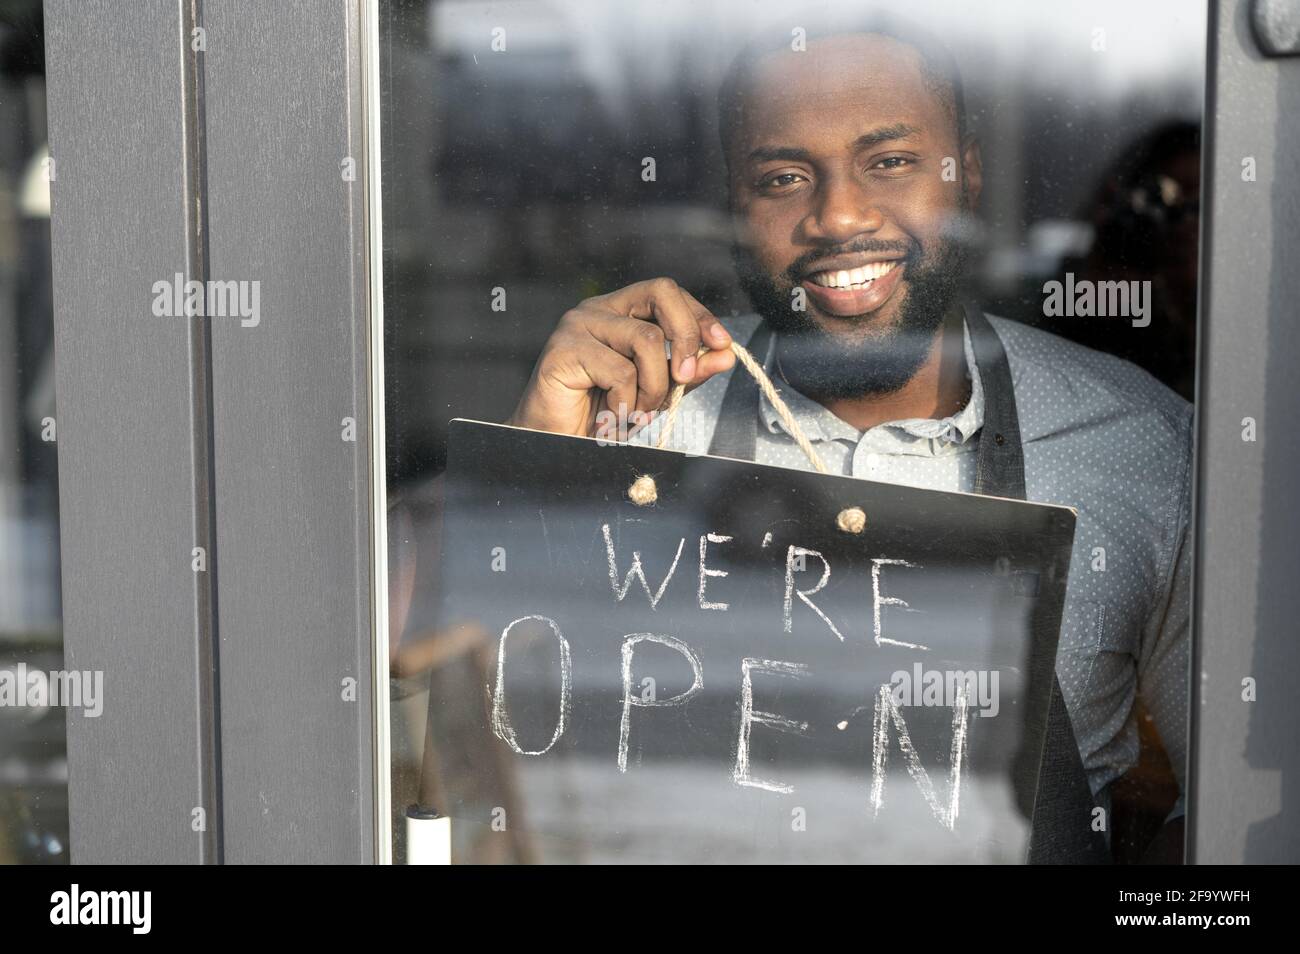 Vue à travers la porte en verre sur un homme africain de serveur Manager avec un panneau ouvert dans sa main. Un propriétaire de café multiracial vous invite à visiter le lieu de réouverture Banque D'Images